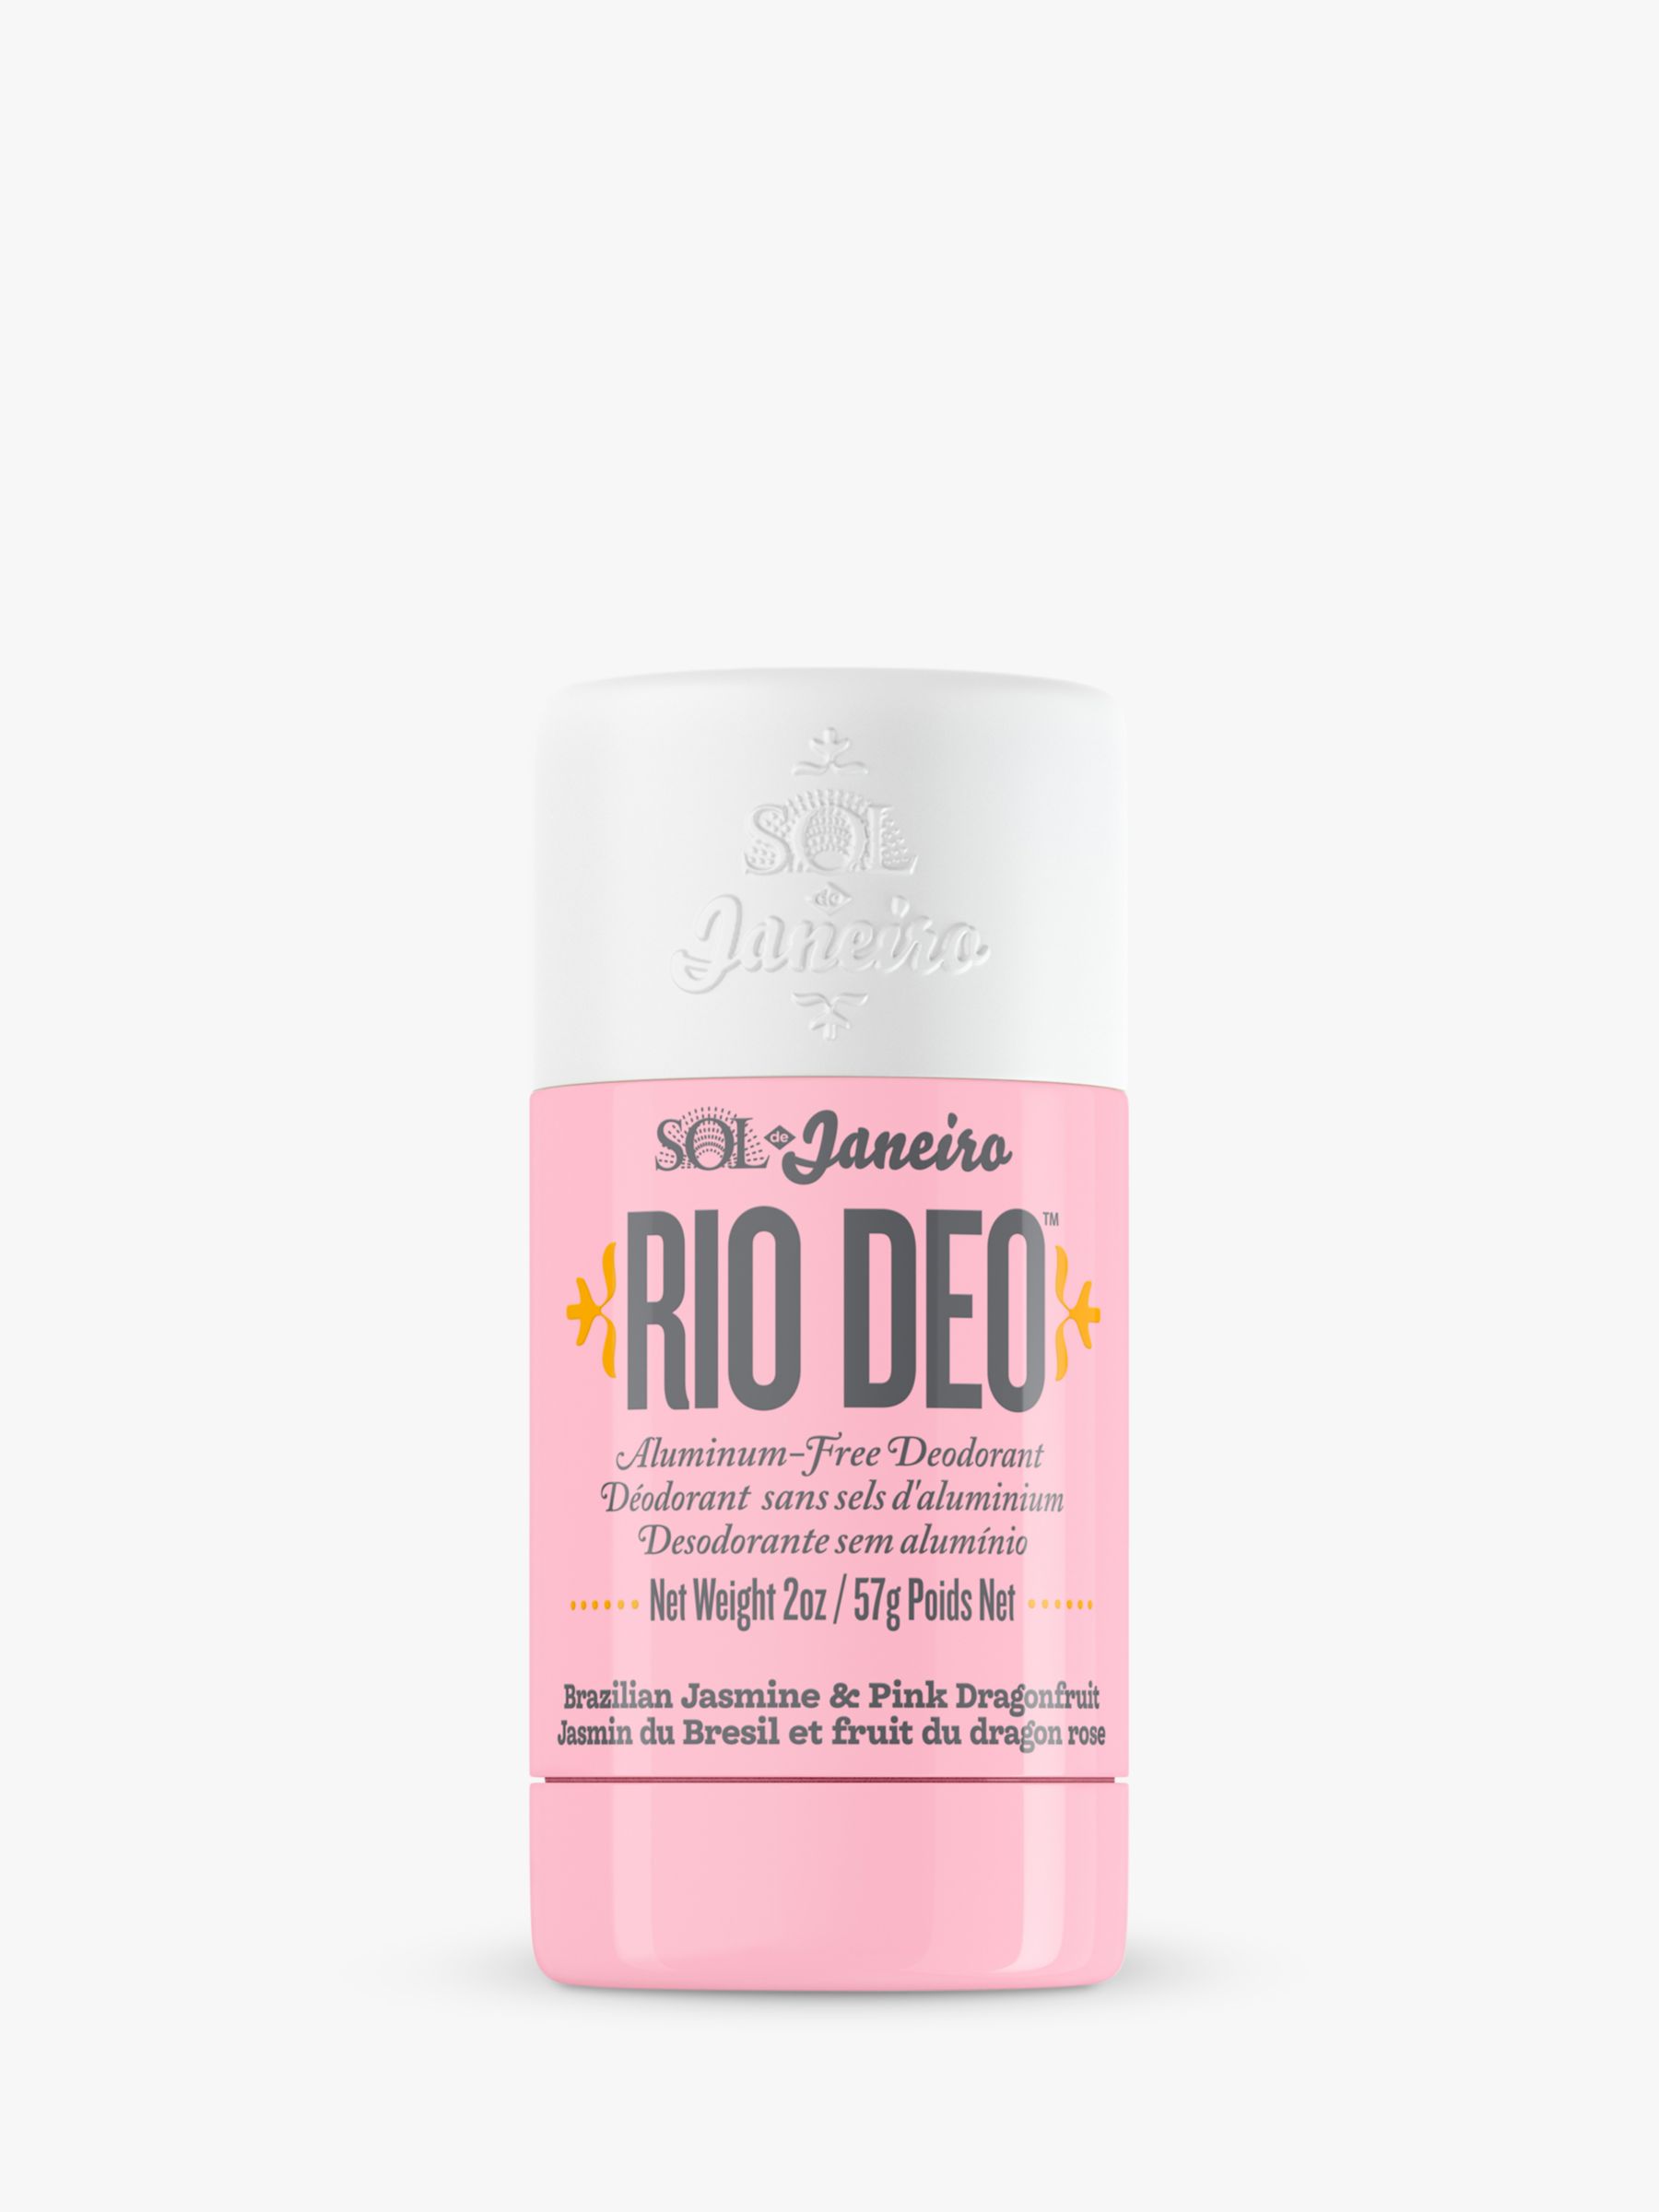 Sol de Janeiro Rio Deo Aluminum-Free Deodorant Cheirosa 68, 57g 1